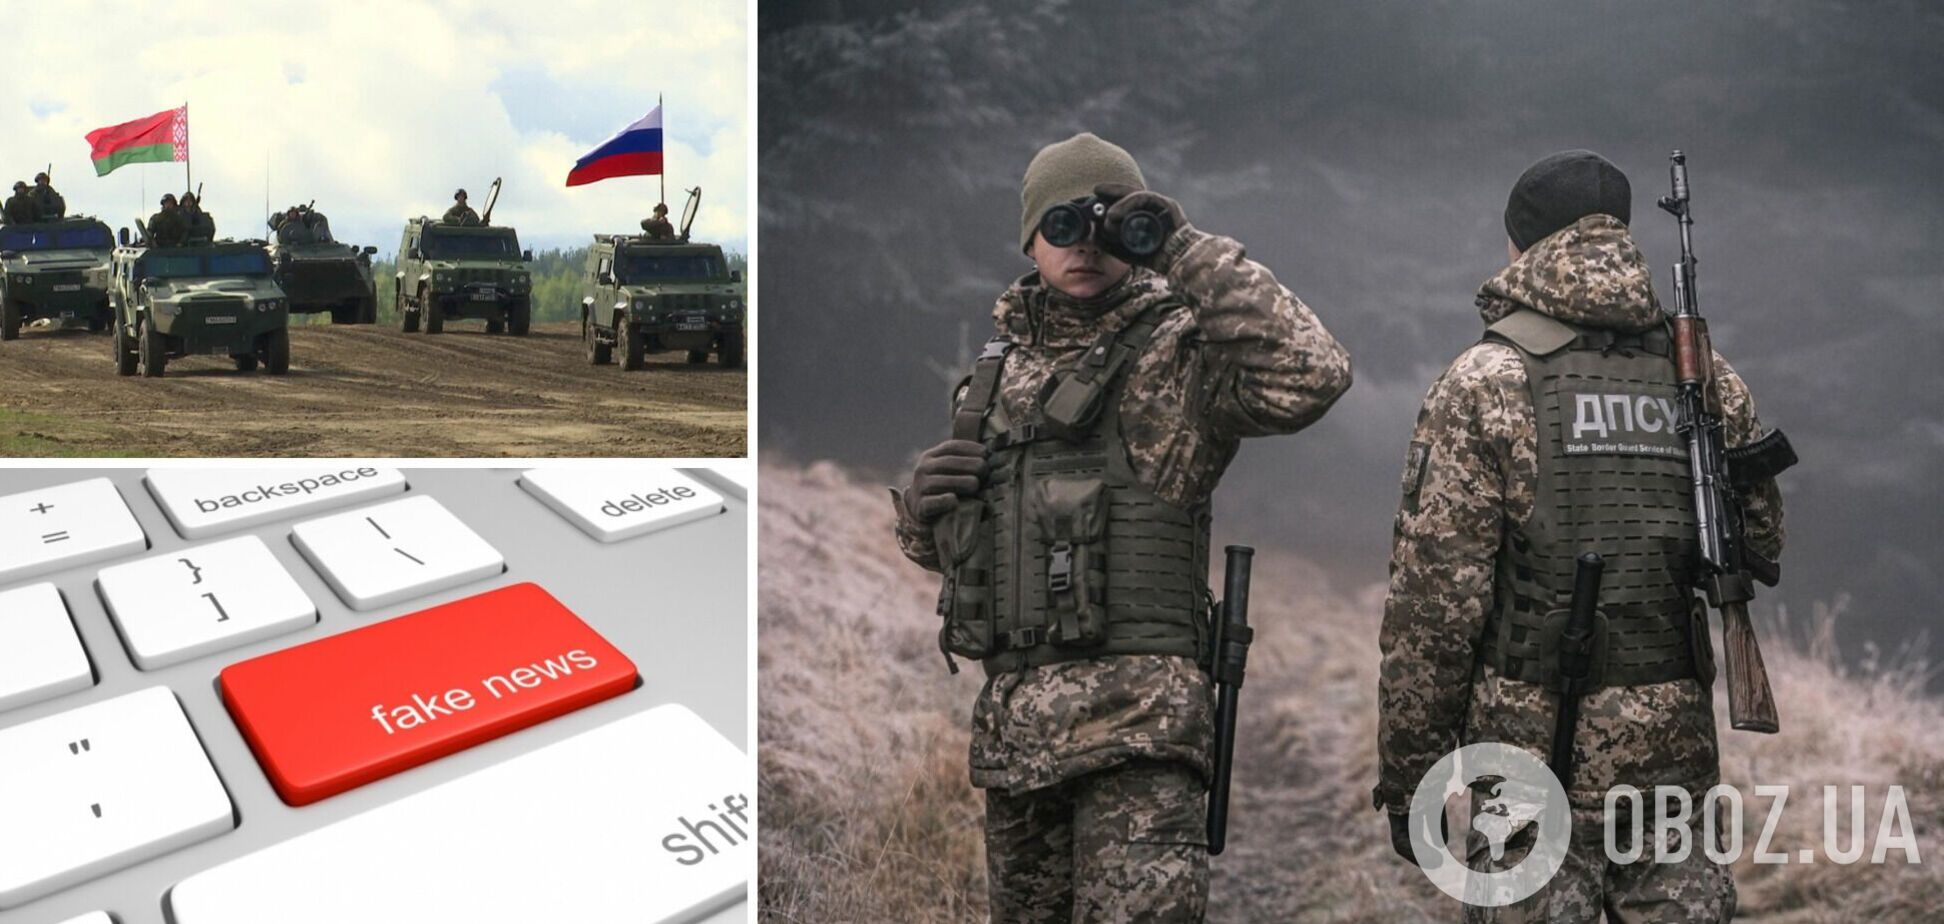 ДПСУ відповіла на фейк про білоруську військову техніку